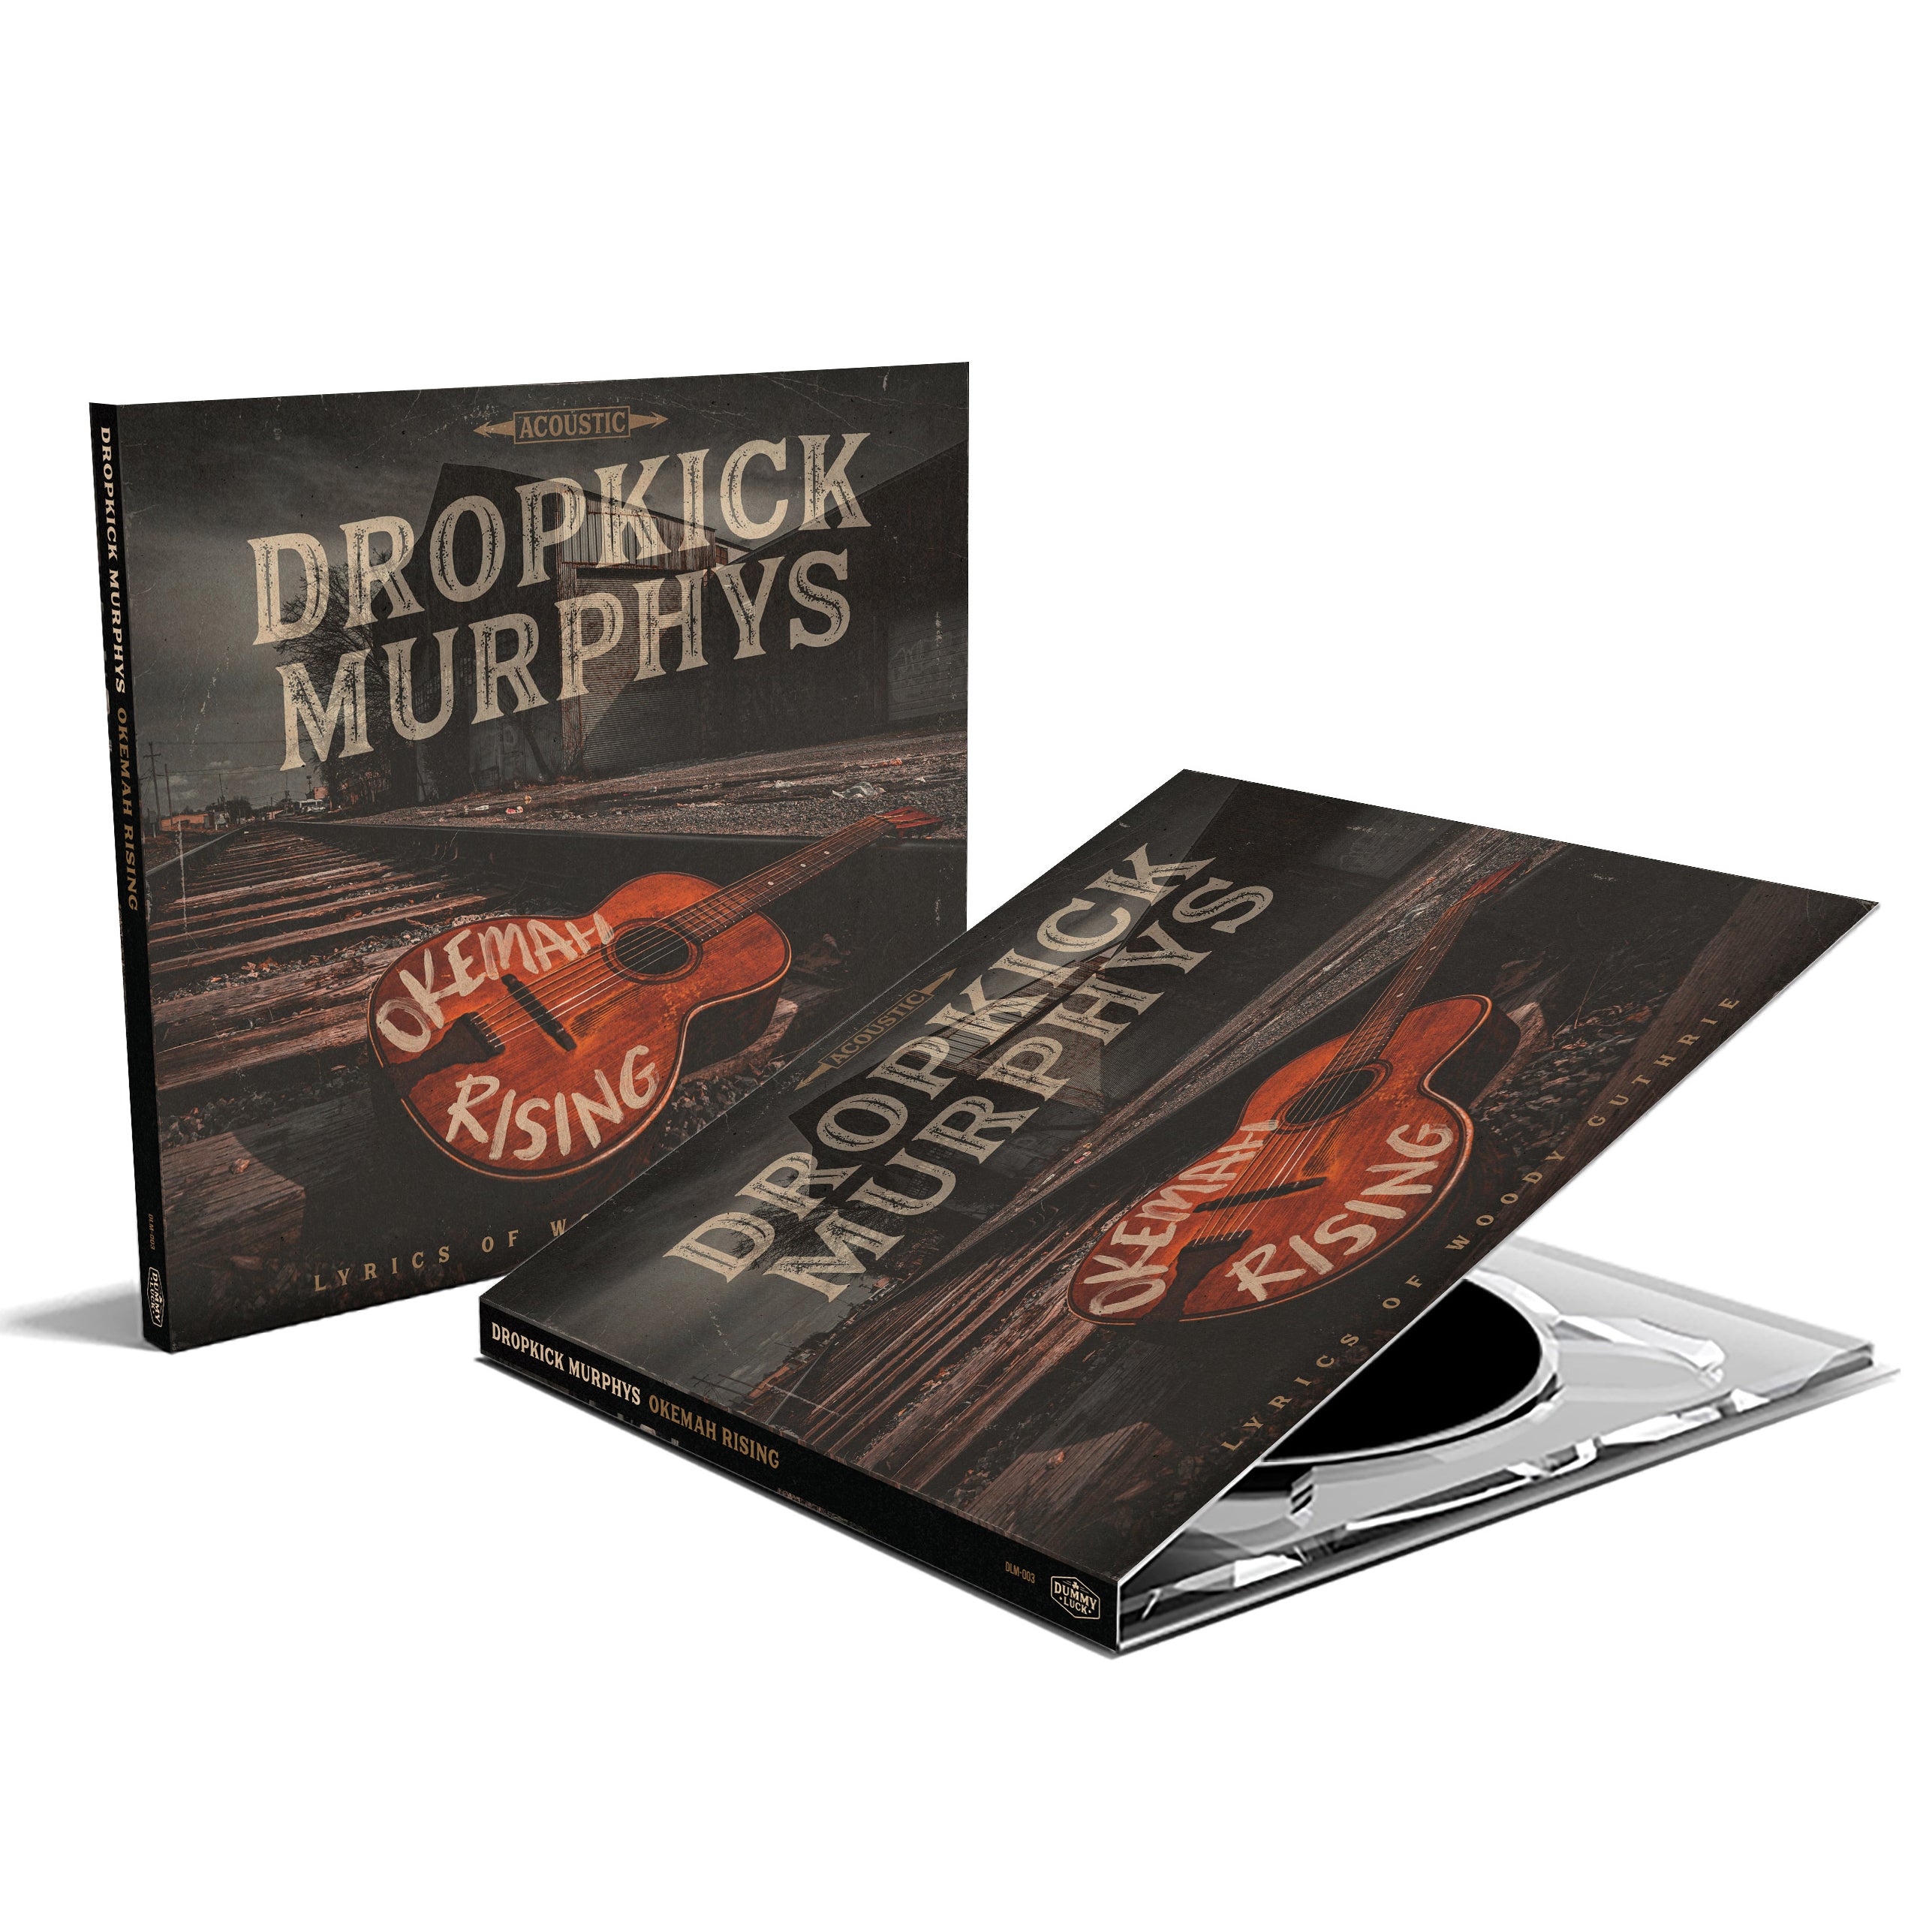 Dropkick Murphys - Okemah Rising: CD